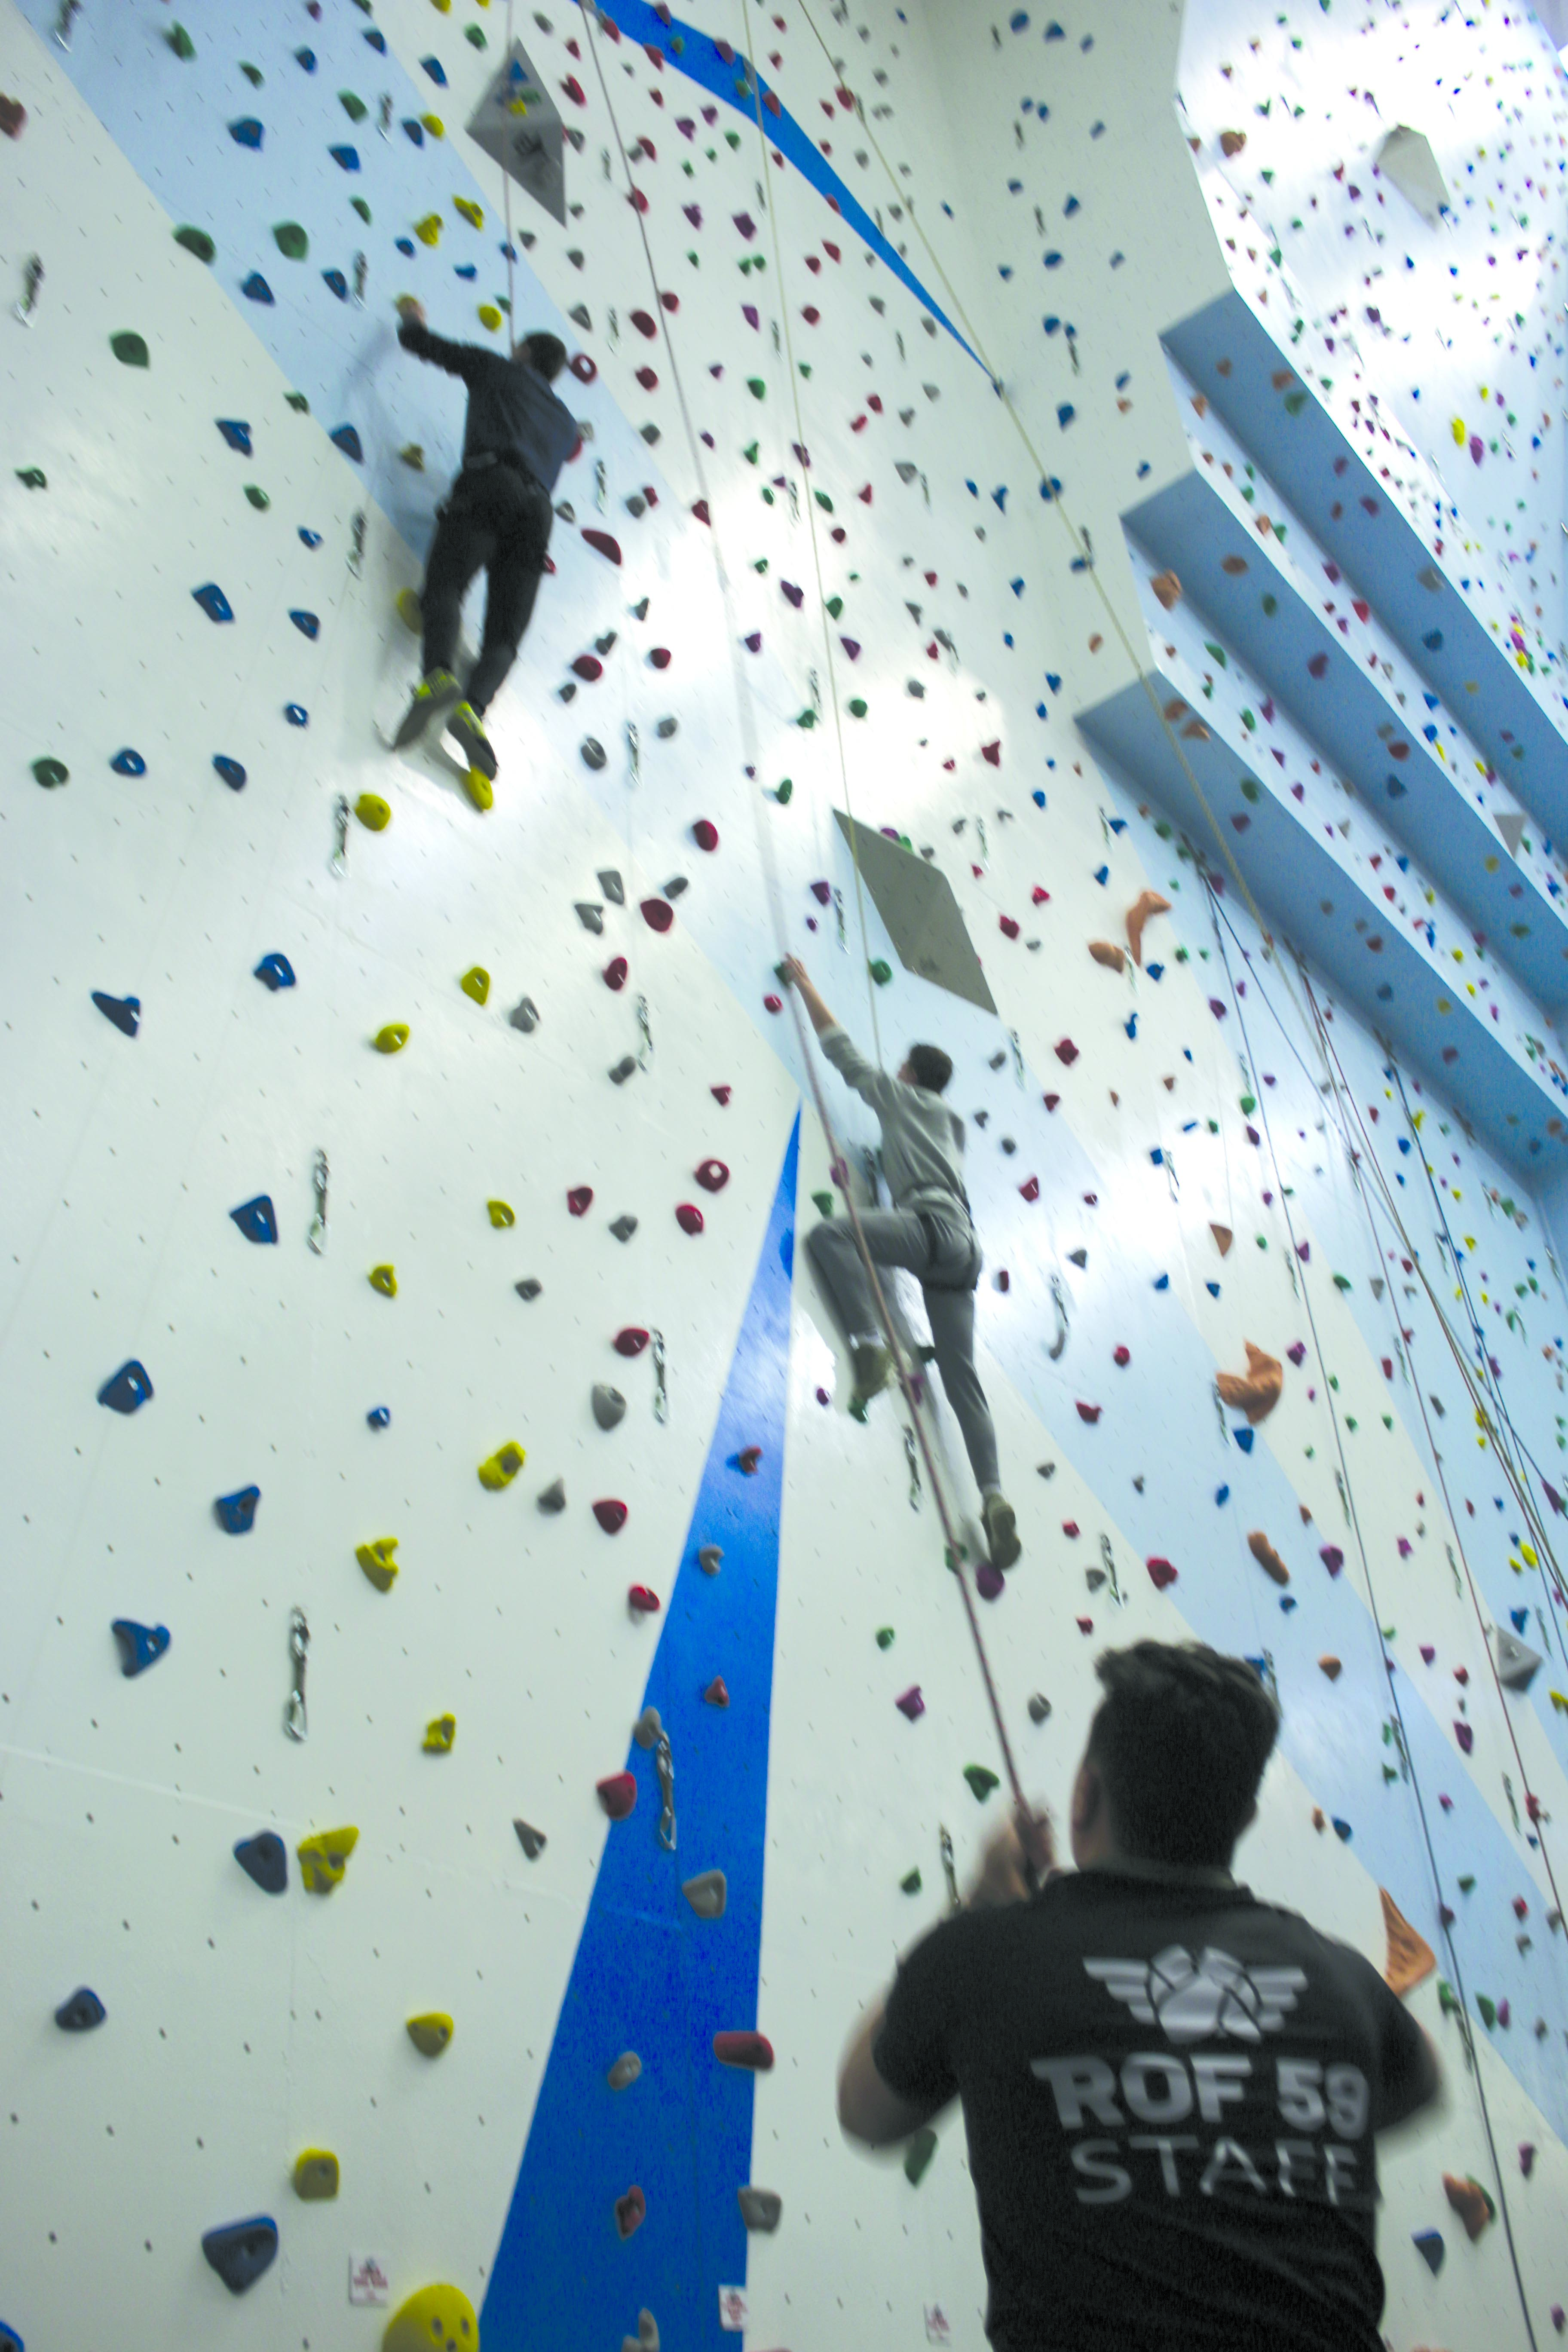 New Climbing Wall Facility At ROF59